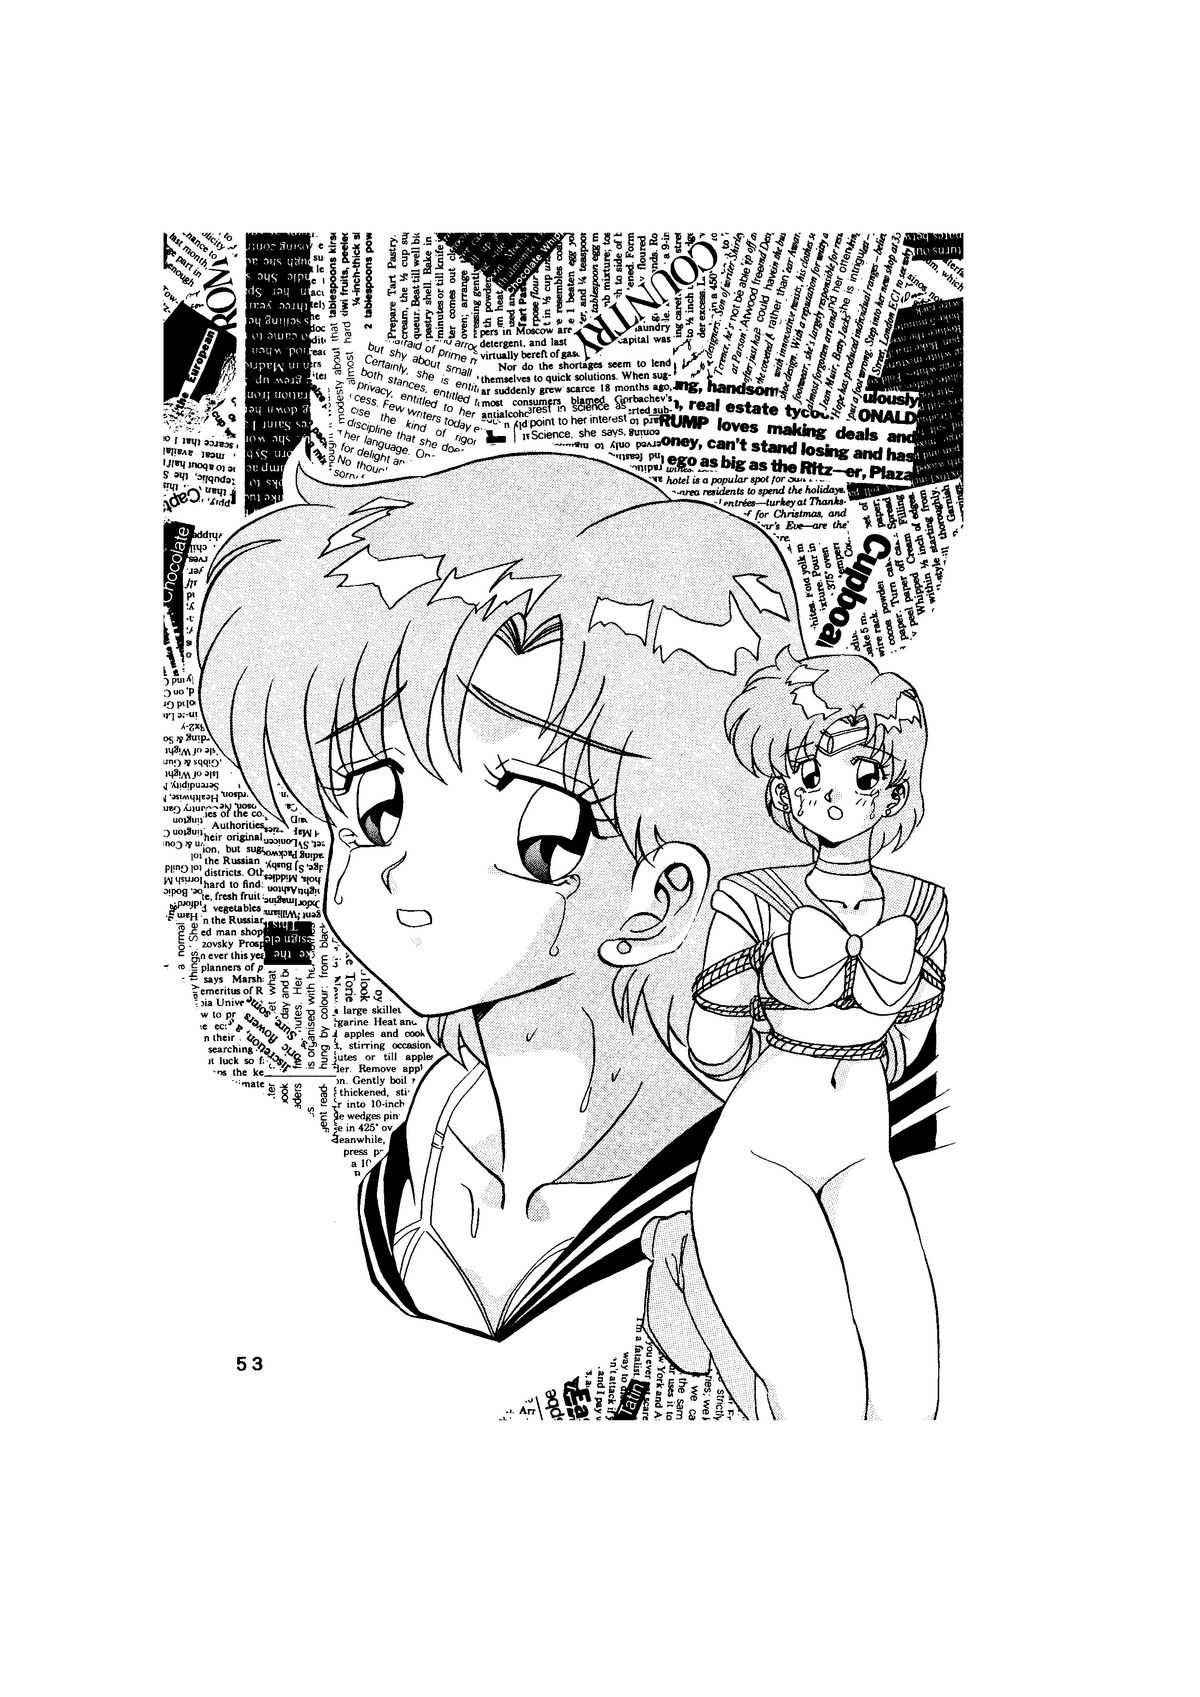 サディスティック-天空の章- Sailor Moon - Global One - Sadistic Tenku no shou 